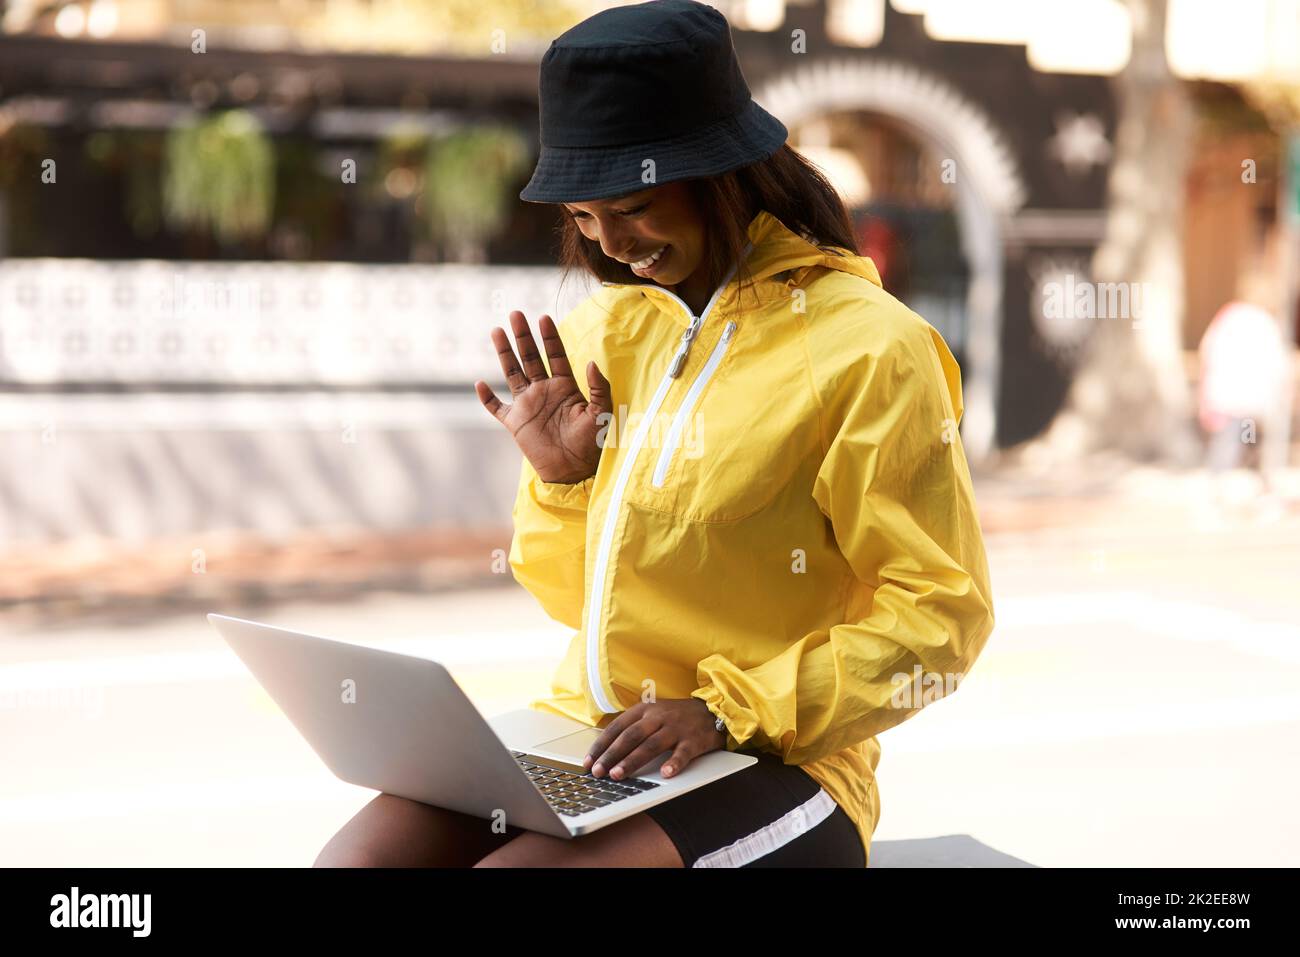 Persönliche Gespräche sind immer besser. Aufnahme einer attraktiven jungen Frau, die ihren Laptop für Videoanrufe verwendet, während sie sich in der Stadt im Freien entspannt. Stockfoto